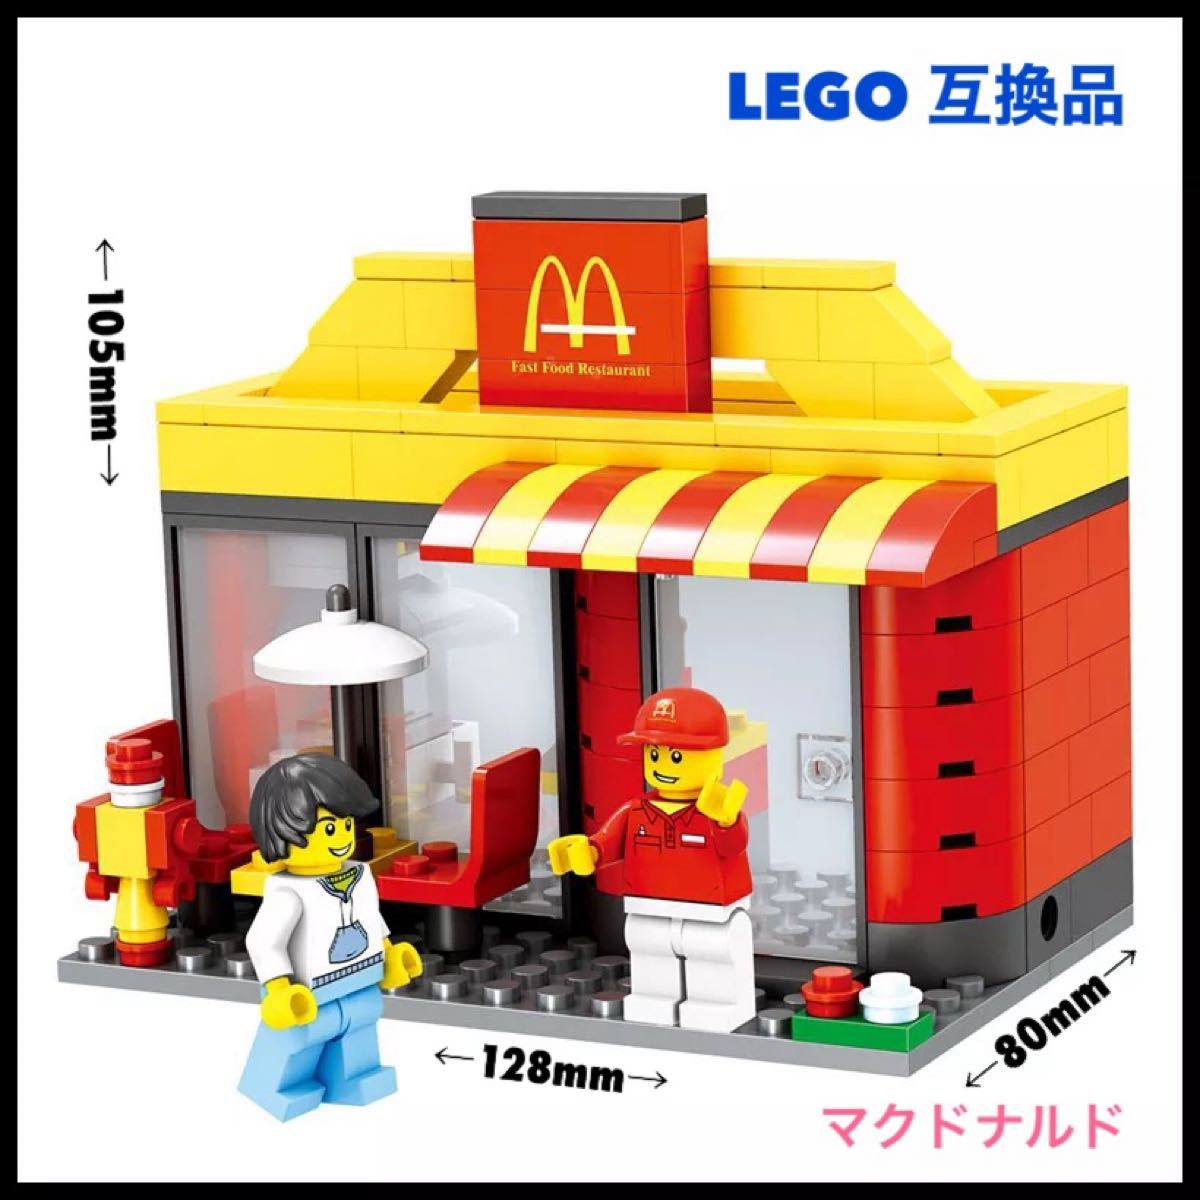 レゴ 互換品 マクドナルド LEGO レゴブロック ミニフィグ セット 送料無料